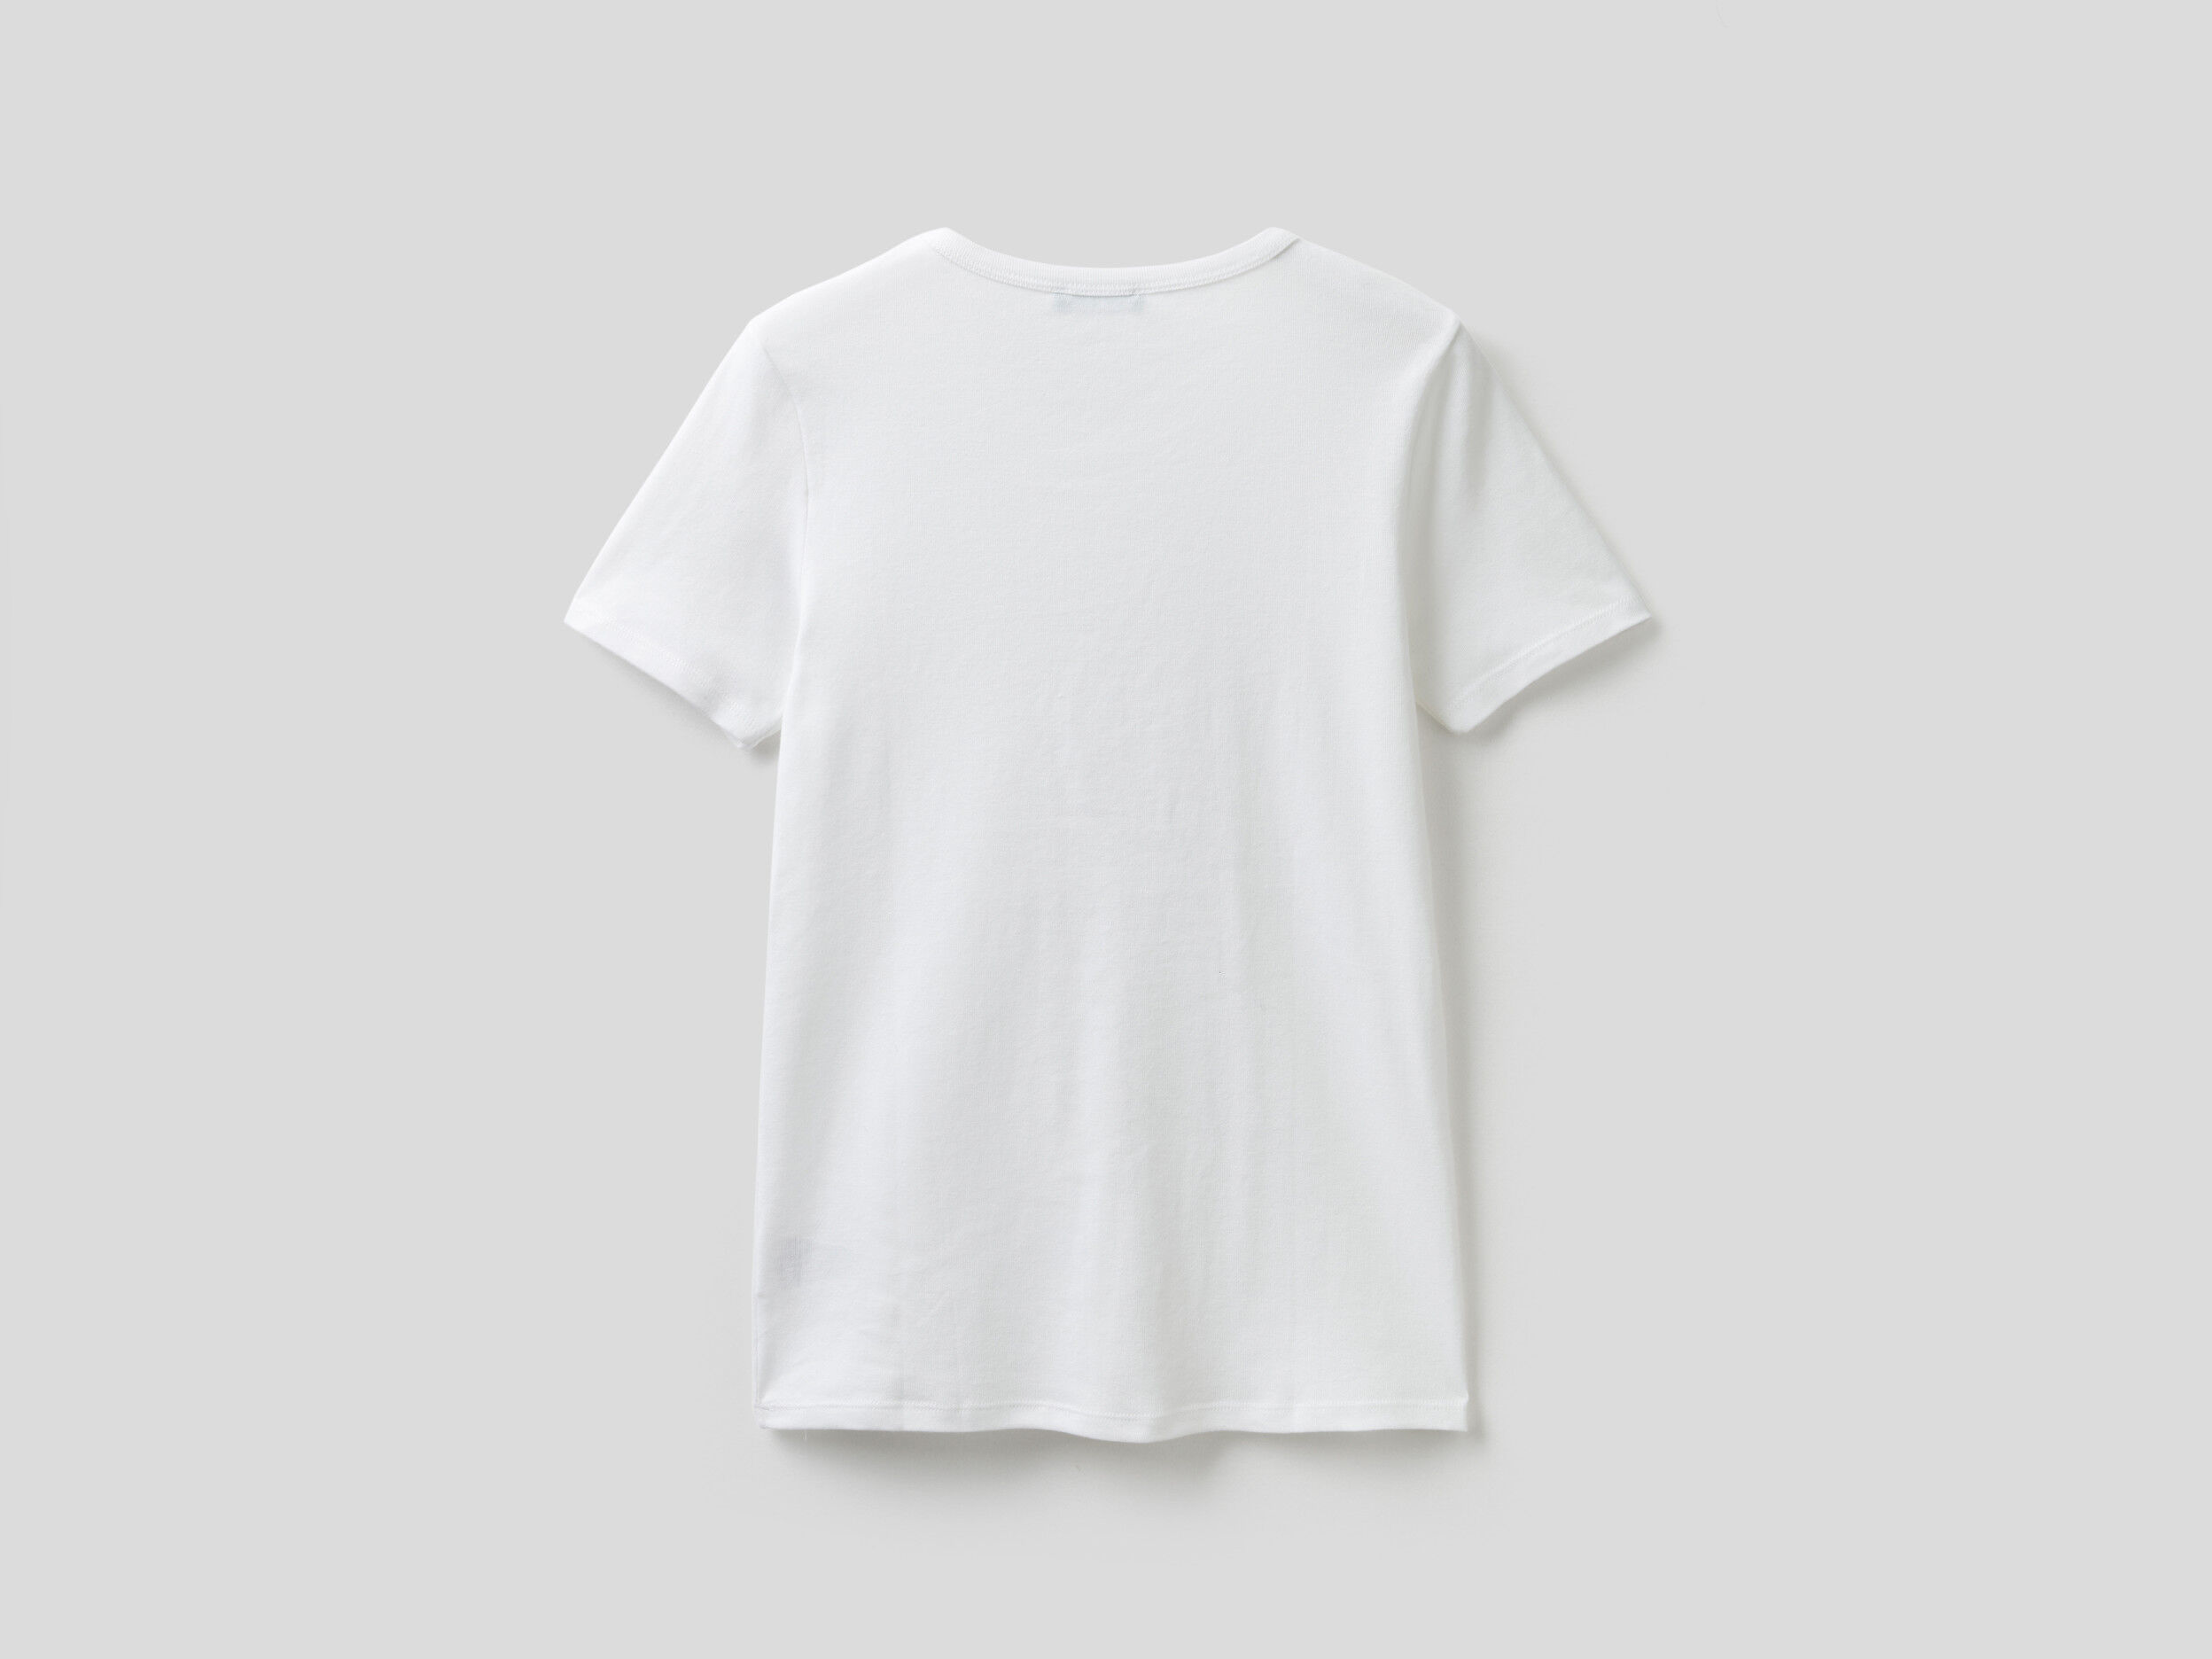 T-shirt 100% Cotone Con Stampa Glitter United Colors of Benetton Abbigliamento Top e t-shirt T-shirt T-shirt a maniche corte 